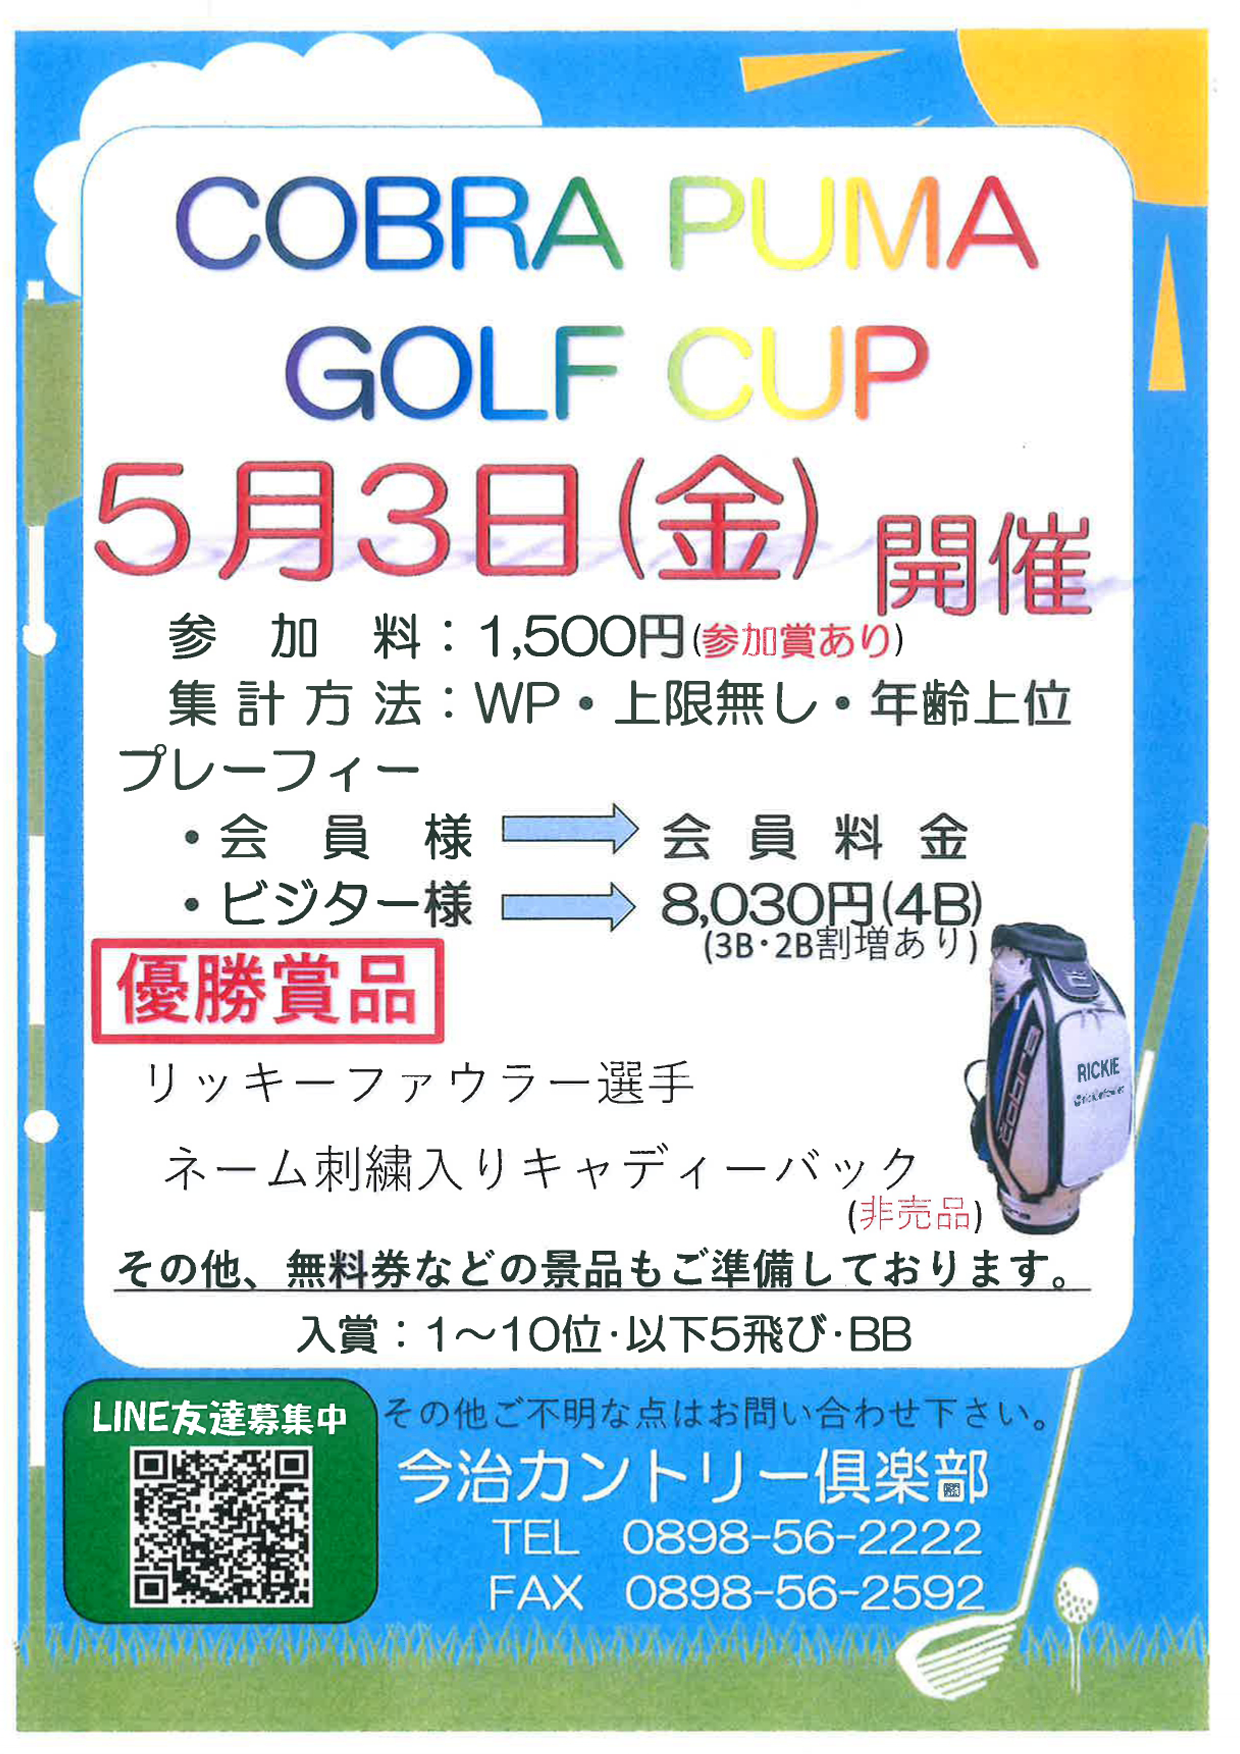 COBRA PUMA GOLF CUP のお知らせ